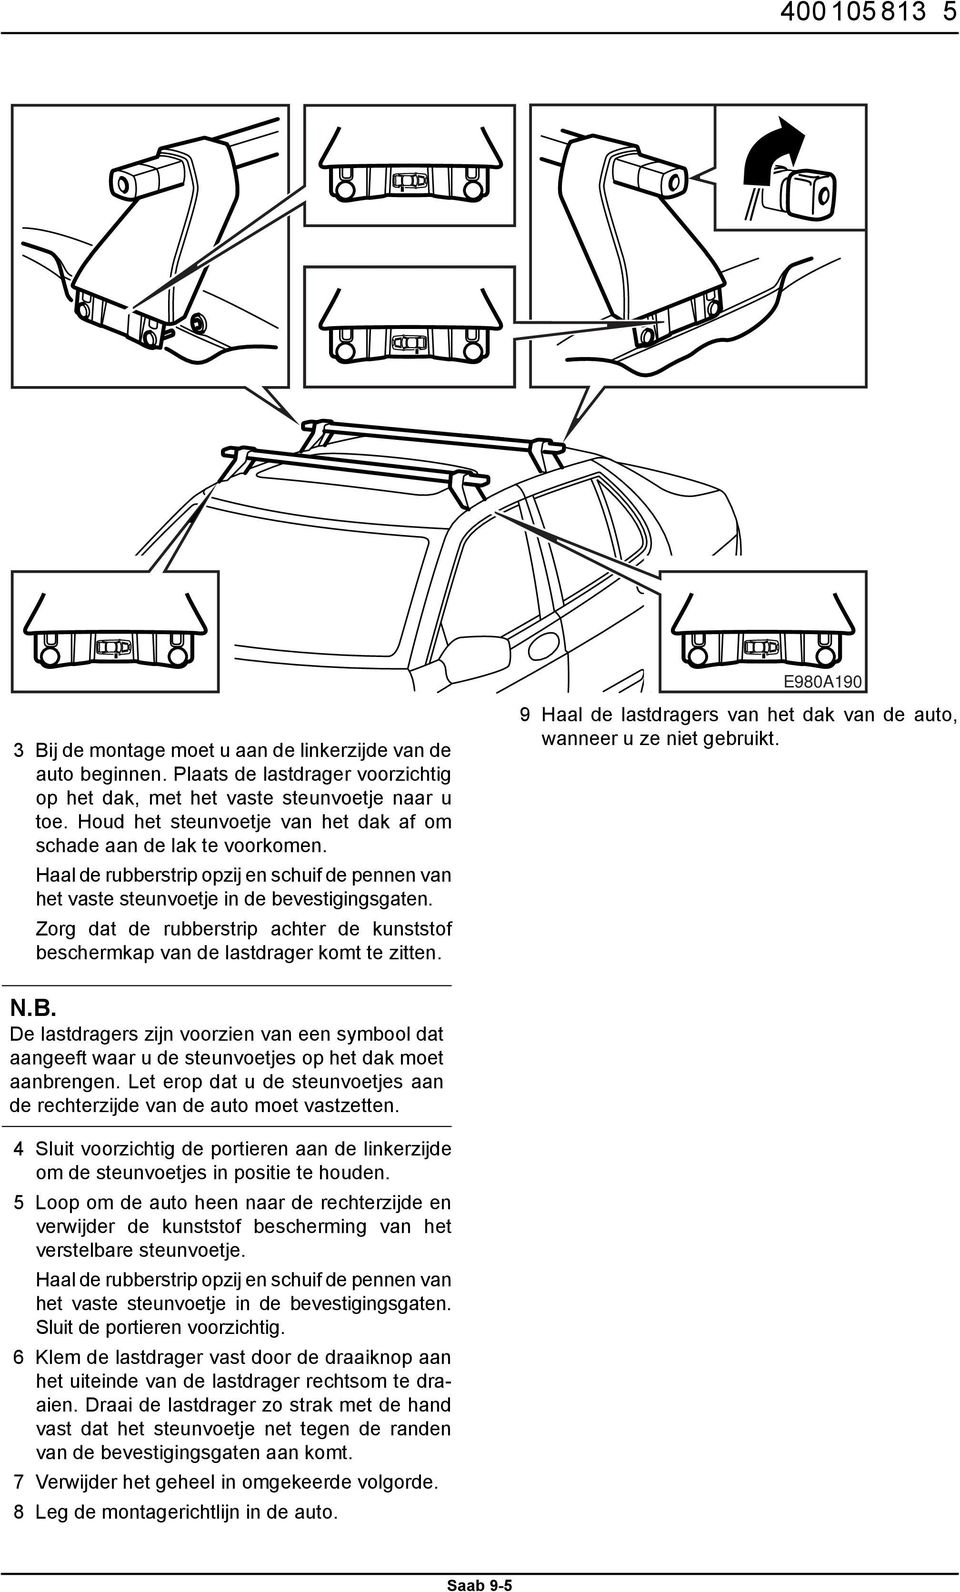 Zorg dat de rubberstrip achter de kunststof beschermkap van de lastdrager komt te zitten. 9 Haal de lastdragers van het dak van de auto, wanneer u ze niet gebruikt. N.B.